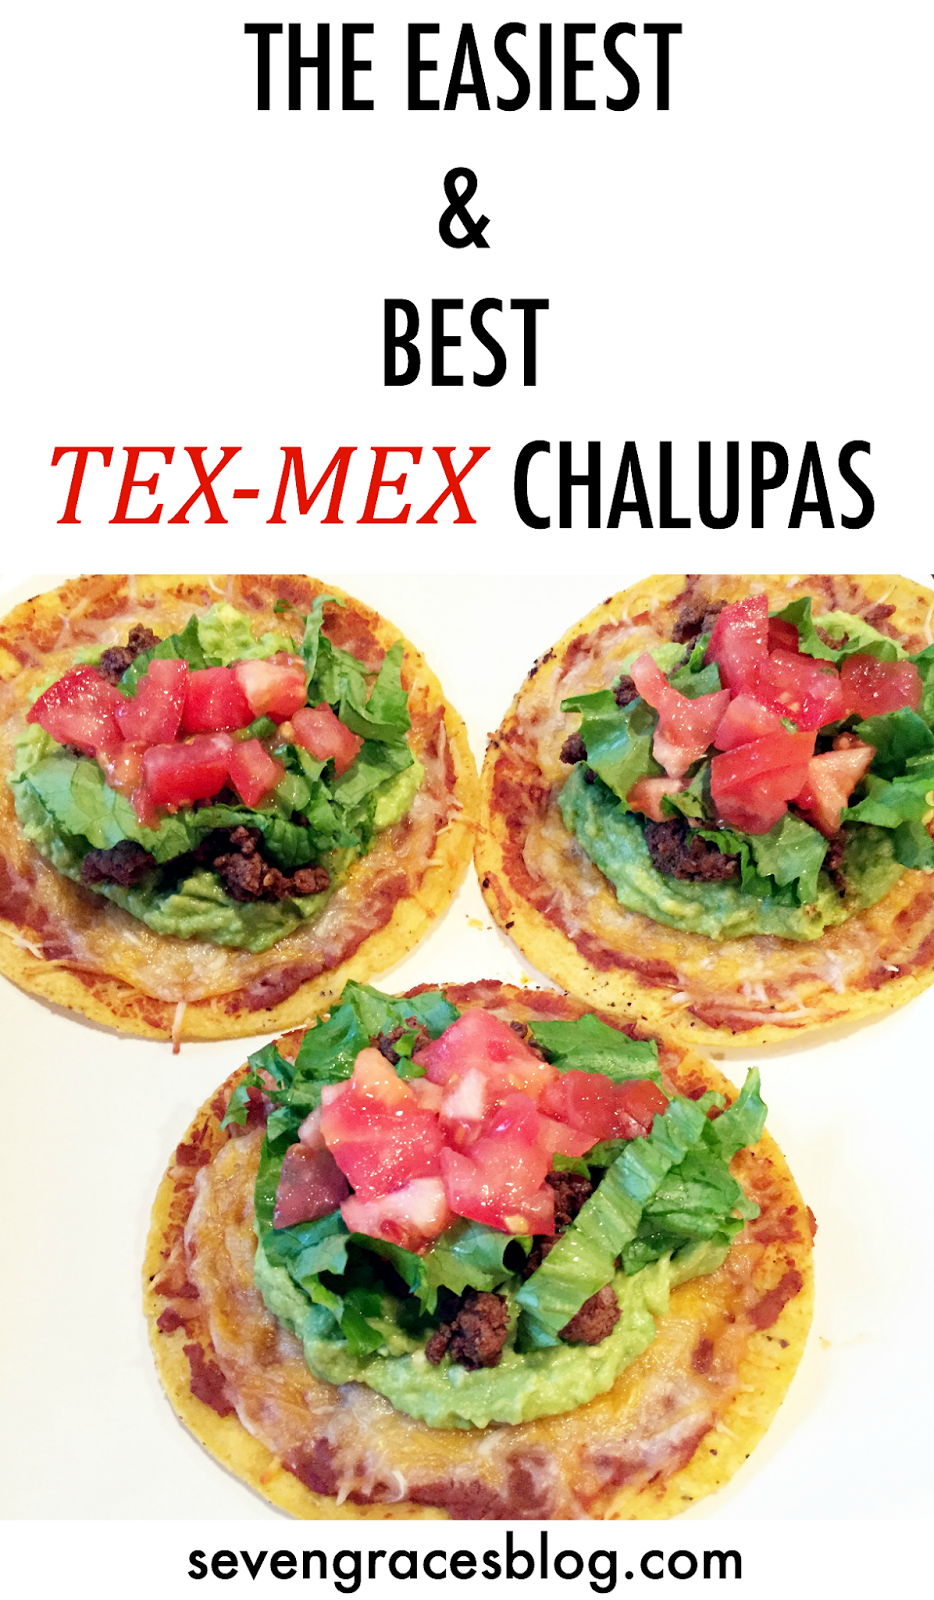 Easy Tex-Mex chalupas, tostadas.